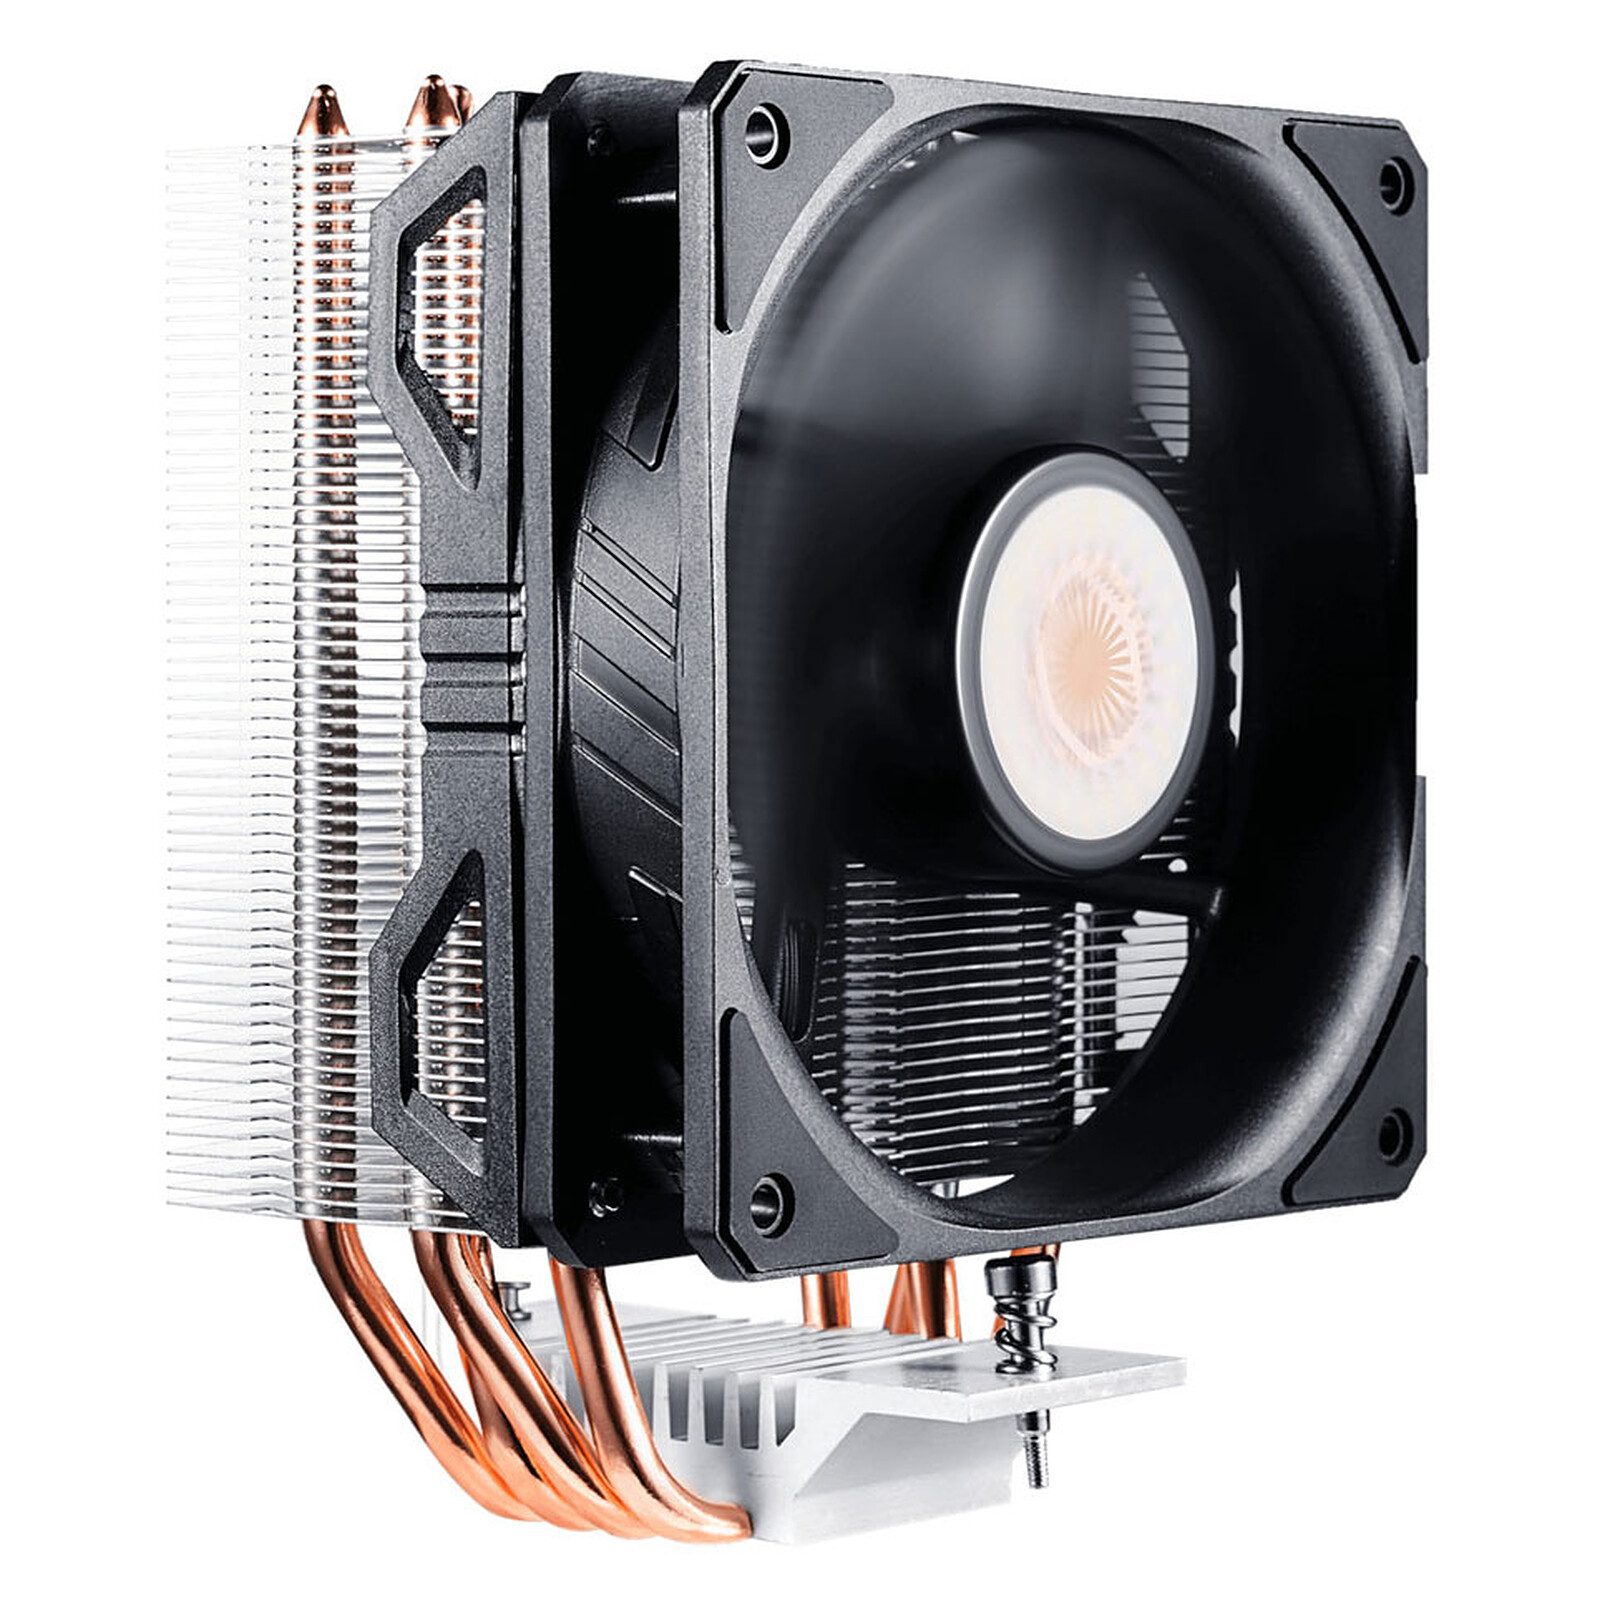 Refroidisseur de processeur pour AMD/Intel, Ventilateur de 80 mm